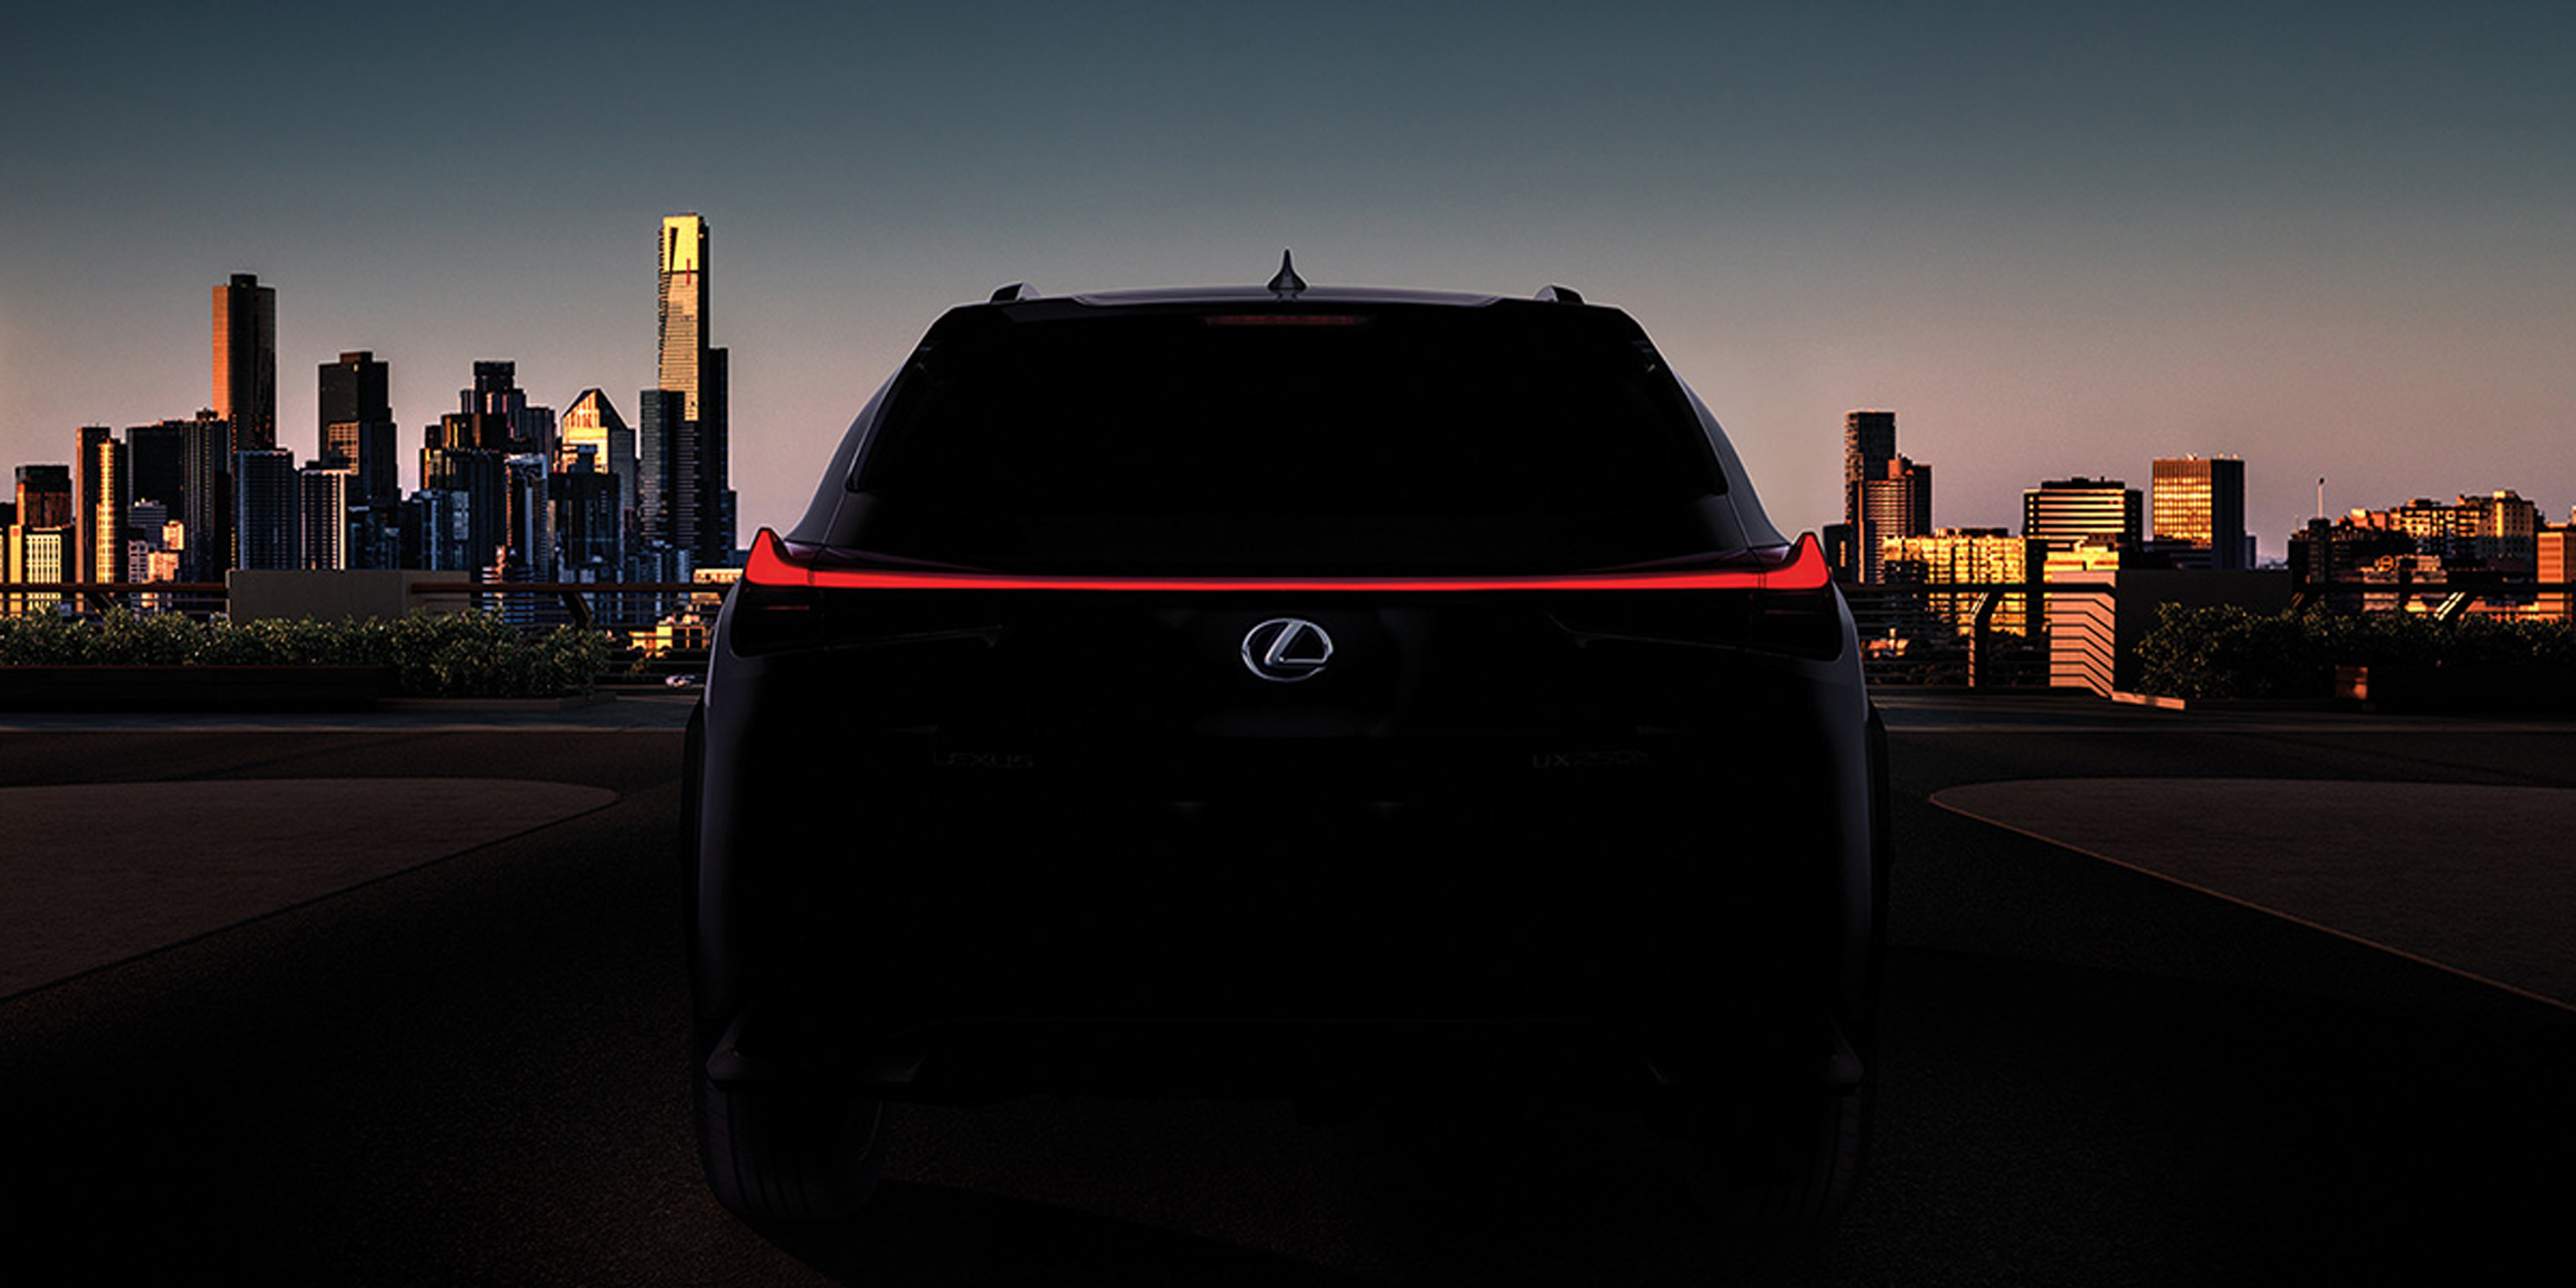 Lexus muestra la primera imagen oficial de su nuevo modelo UX